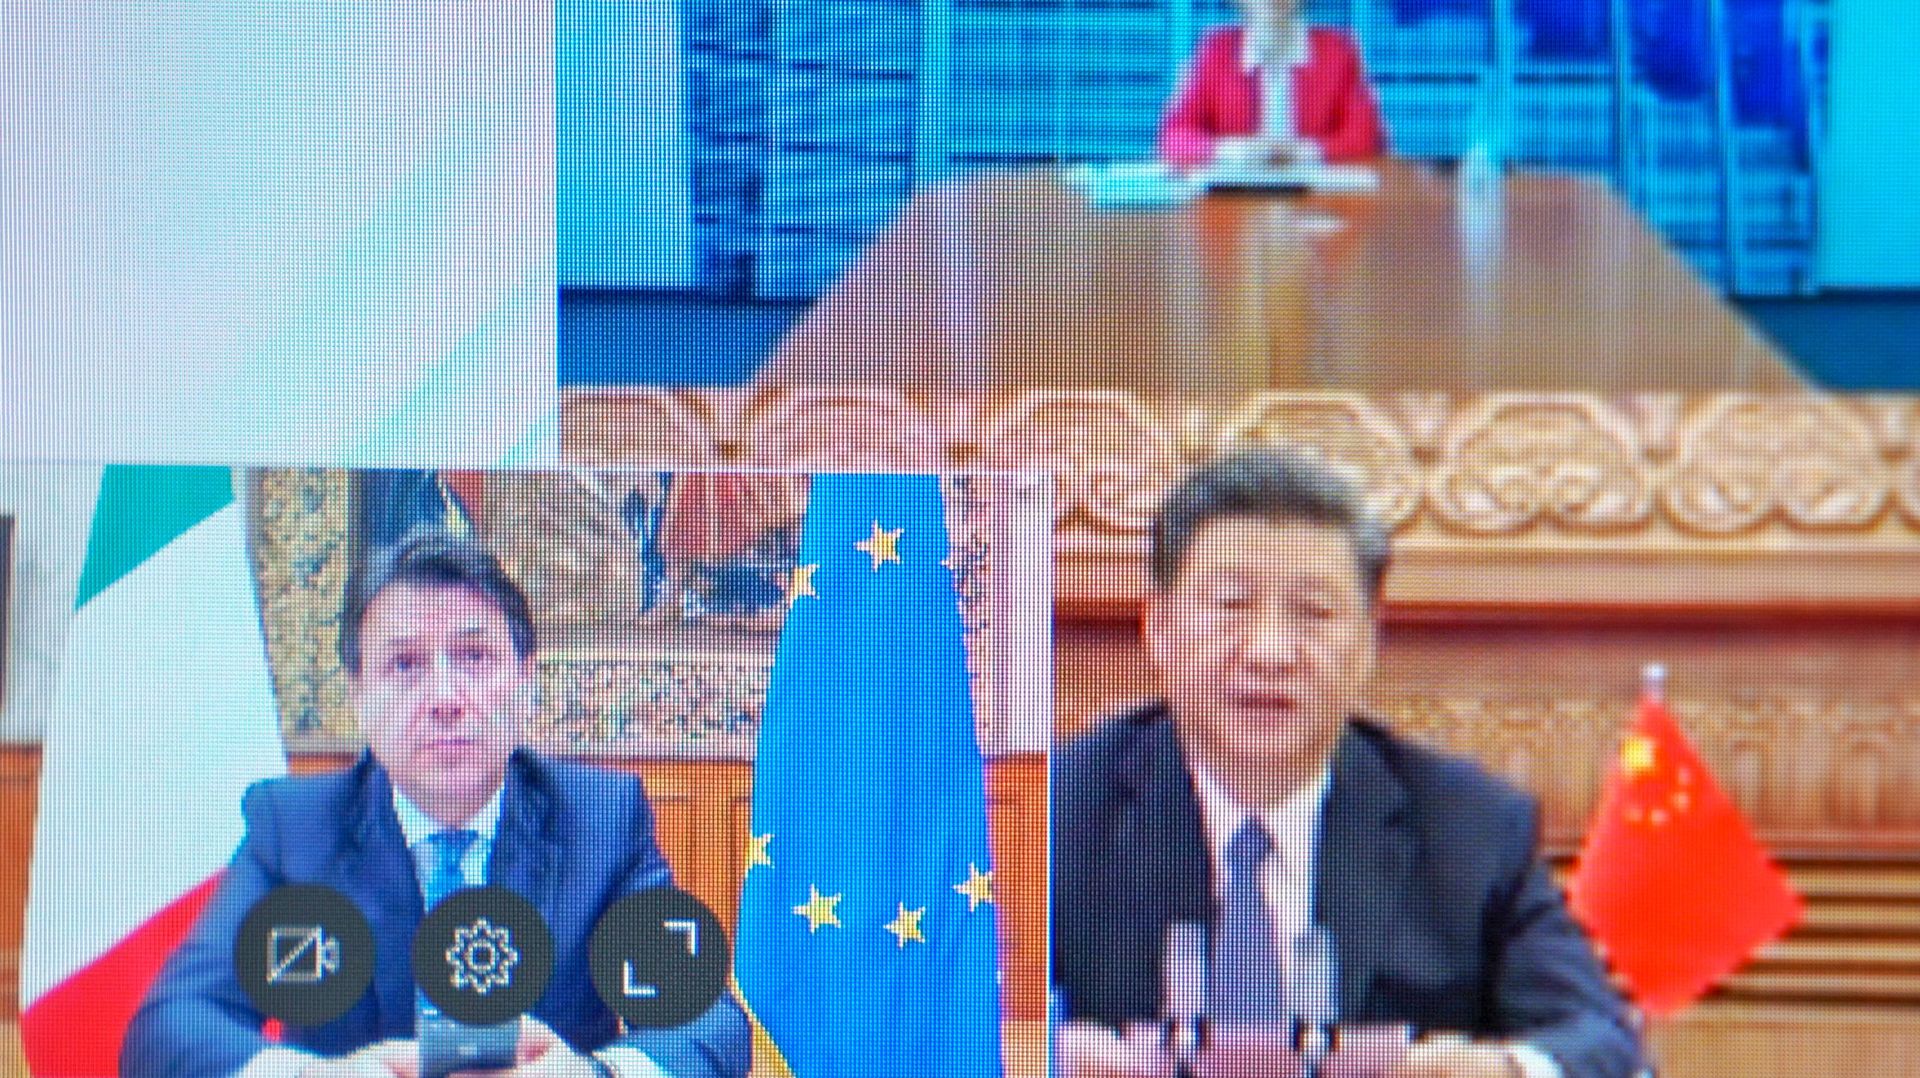 Discussion entre le Xi Jinping, Giuseppe Conte et Ursula von de Leyen